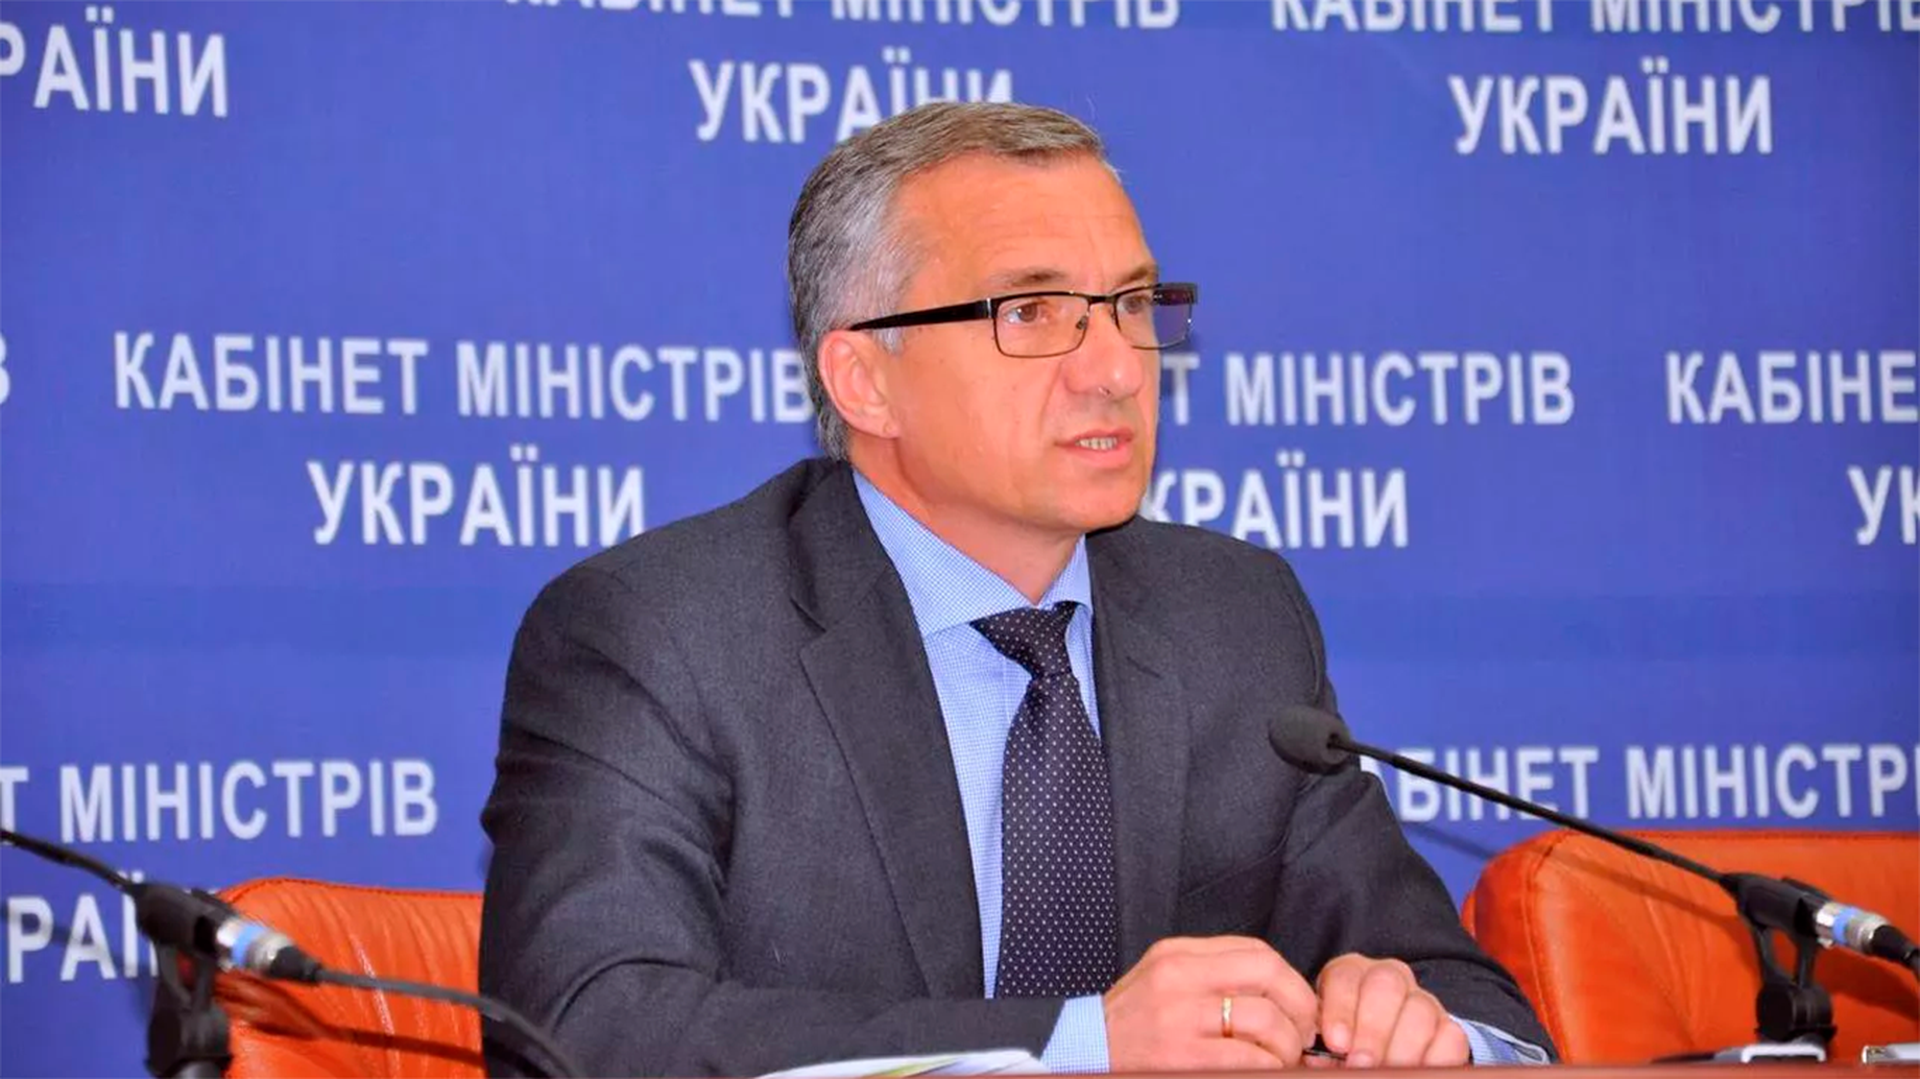 Суд заочно арестовал экс-министра финансов Украины Шлапака